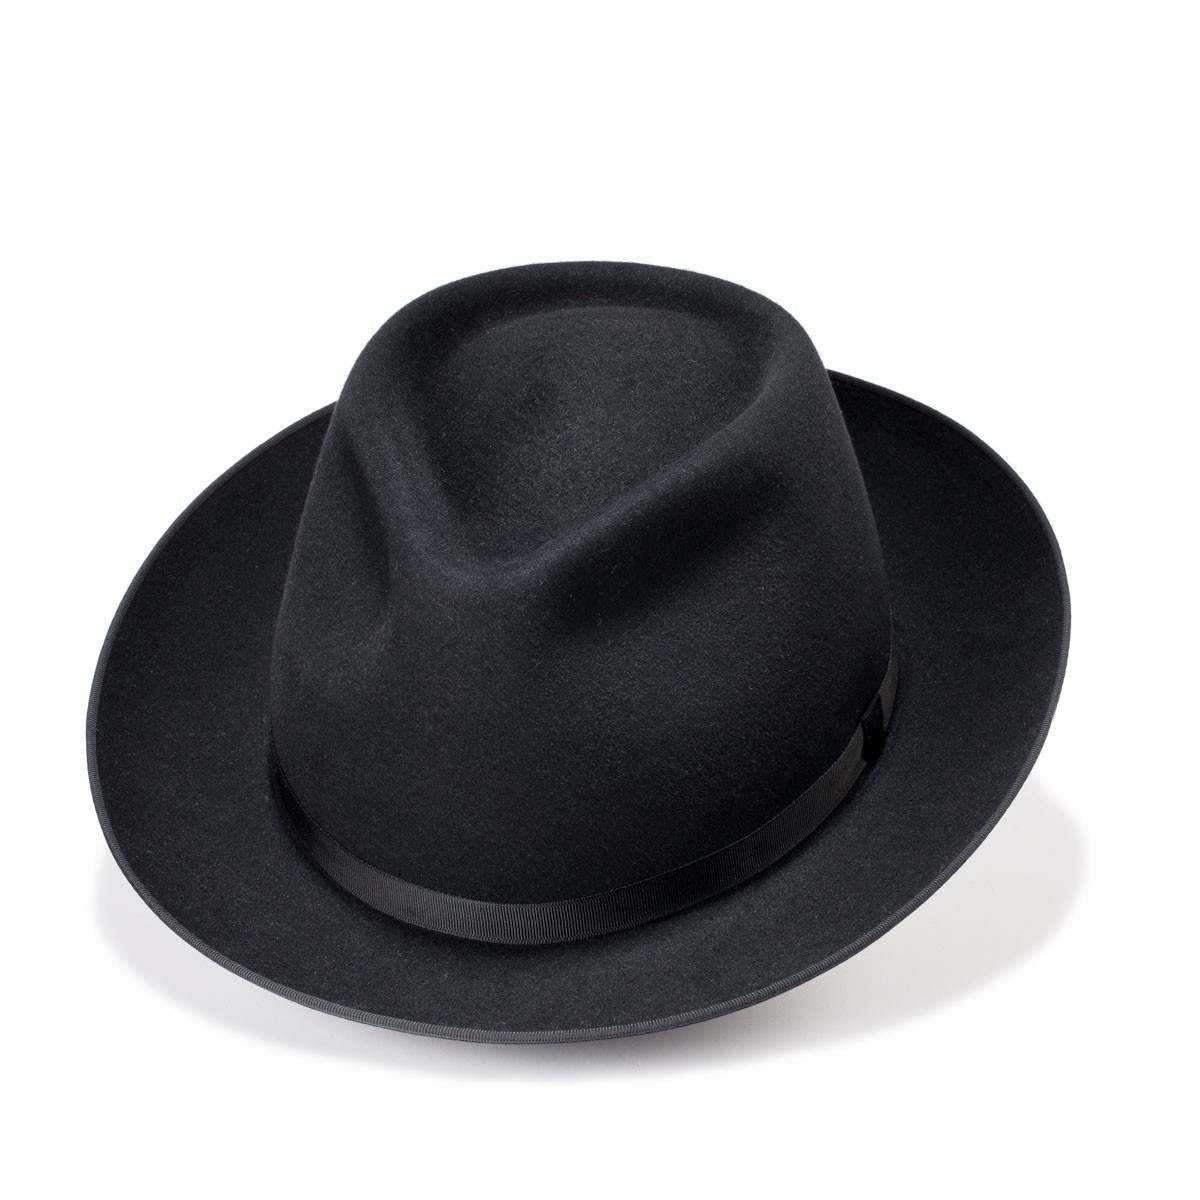 Onsinic Negro del Sombrero de Copa del Fieltro por un Vestido Accesorio del Partido 